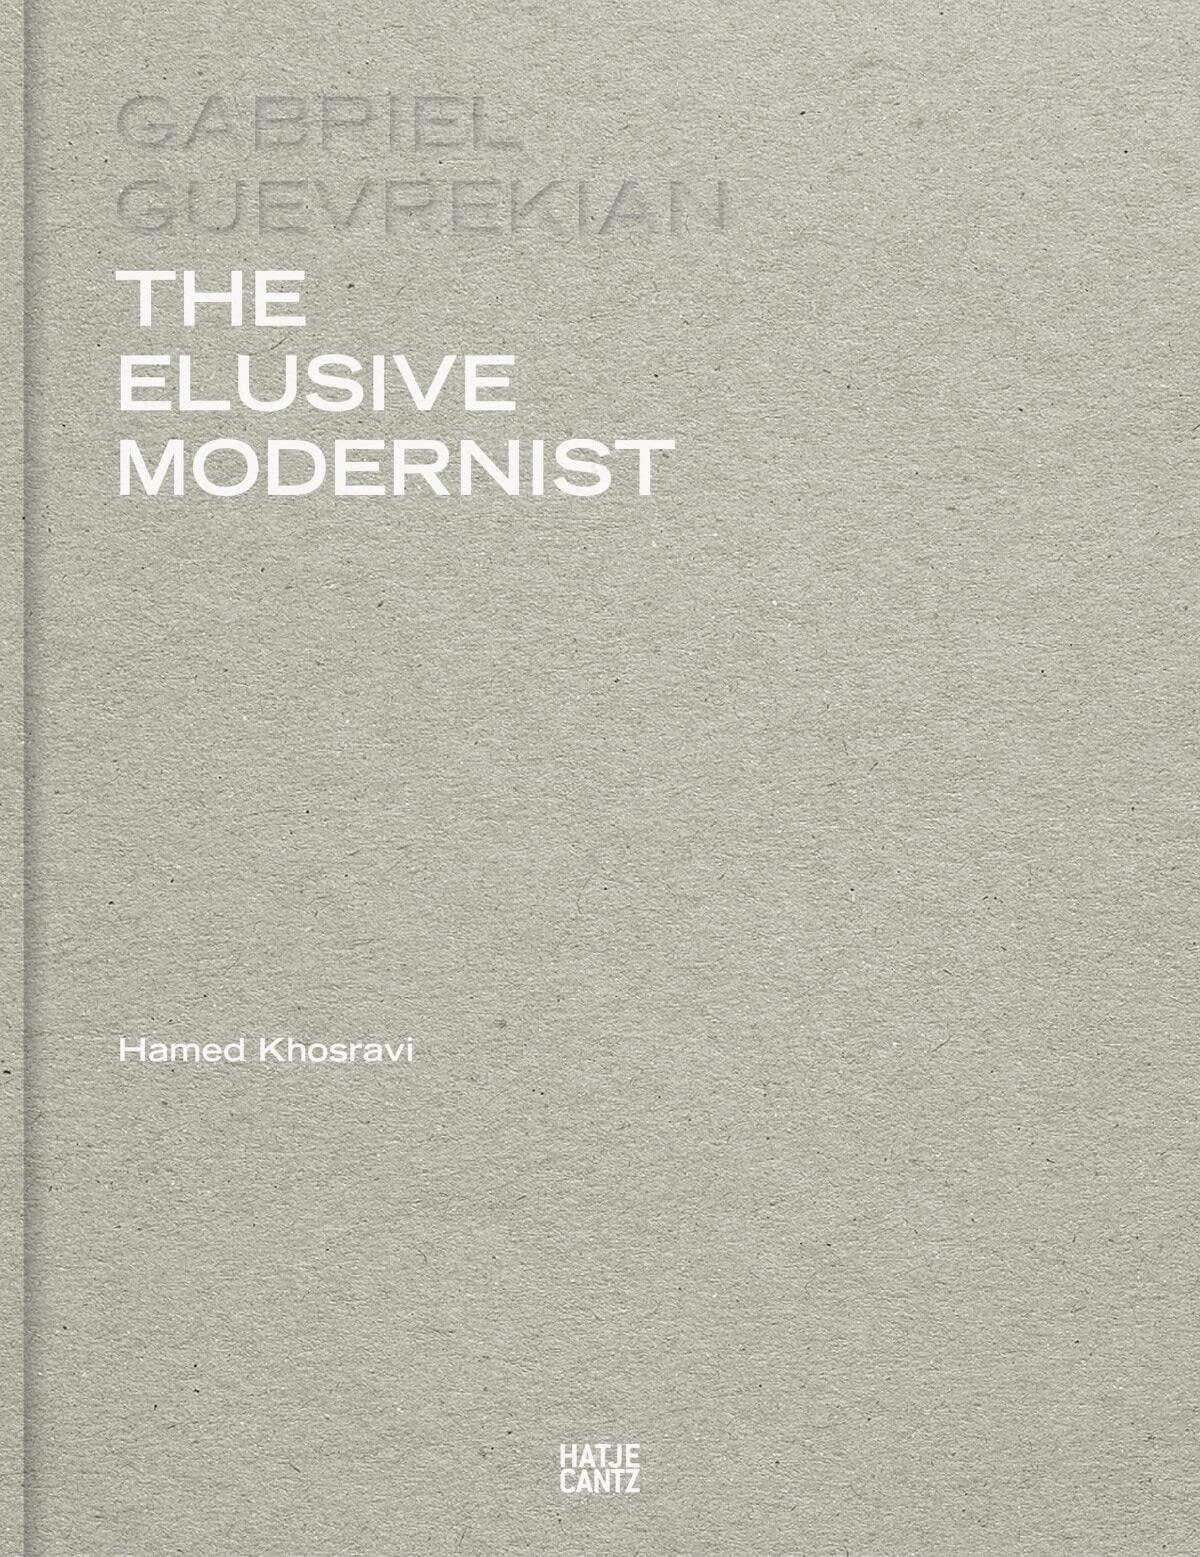 The Elusive Modernist. Gabriel Guevrekian